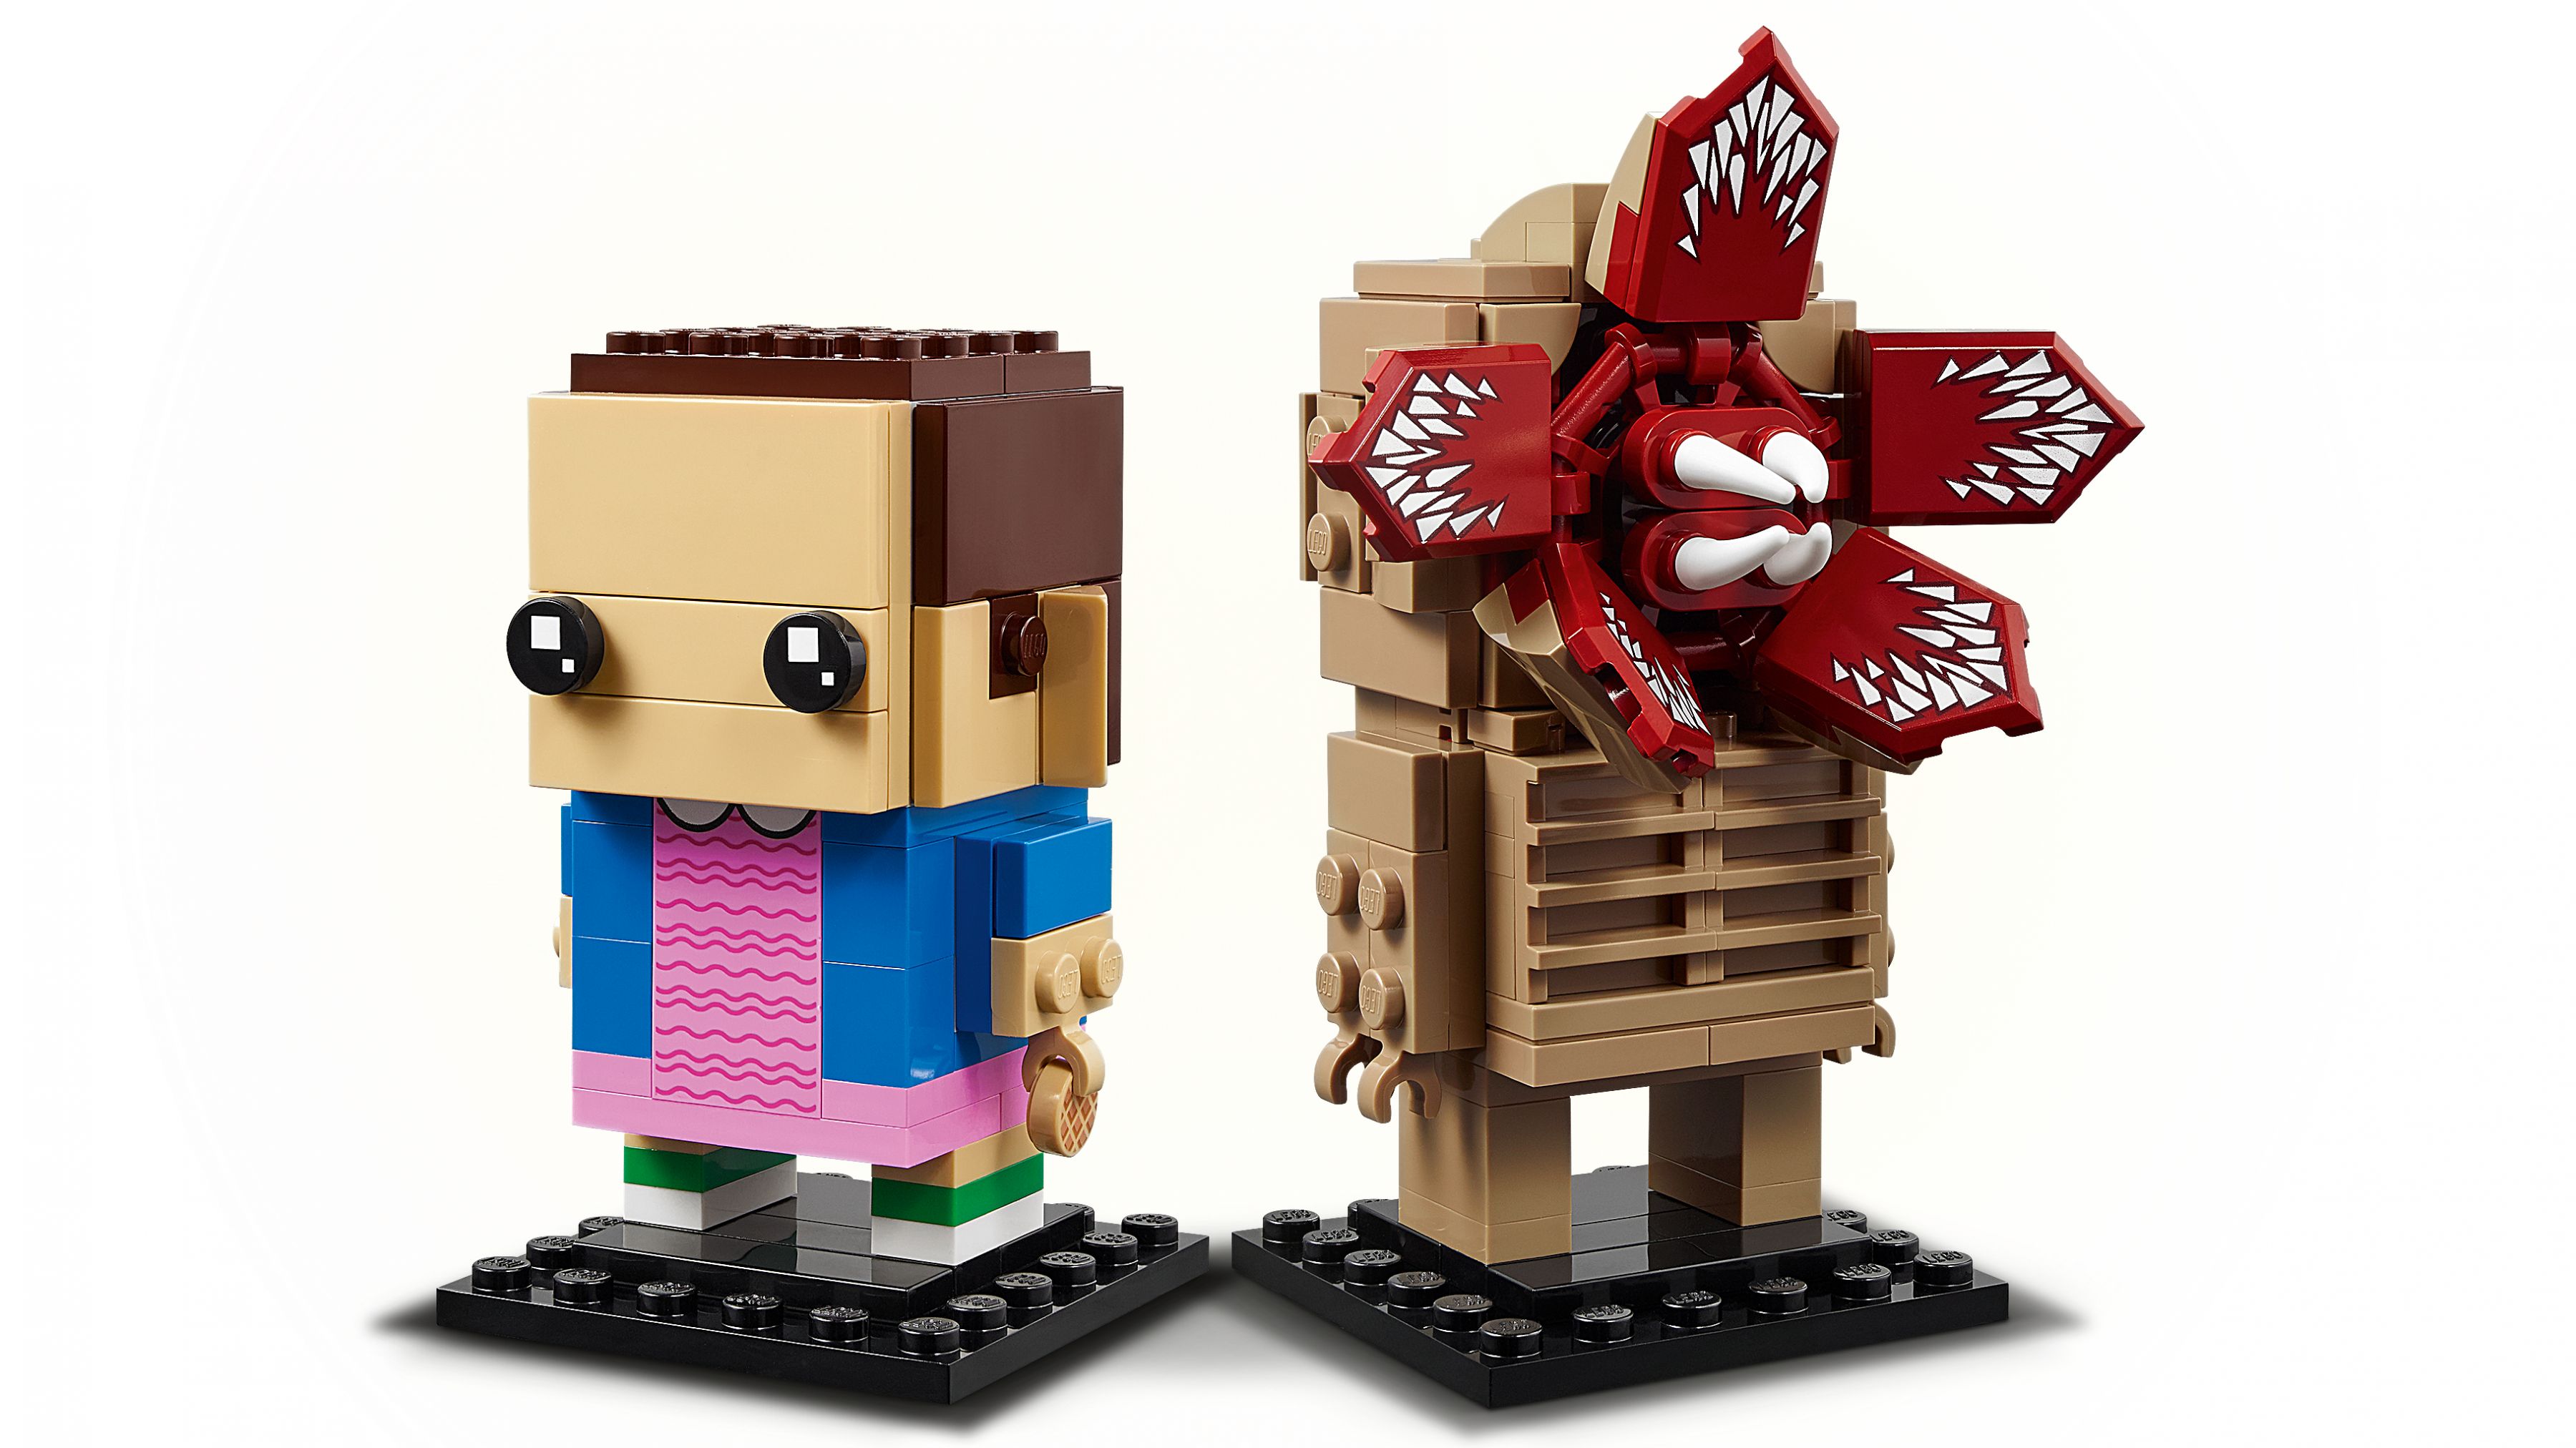 LEGO BrickHeadz 40549 Demogorgon & Elfi LEGO_40549_WEB_SEC01_NOBG.jpg